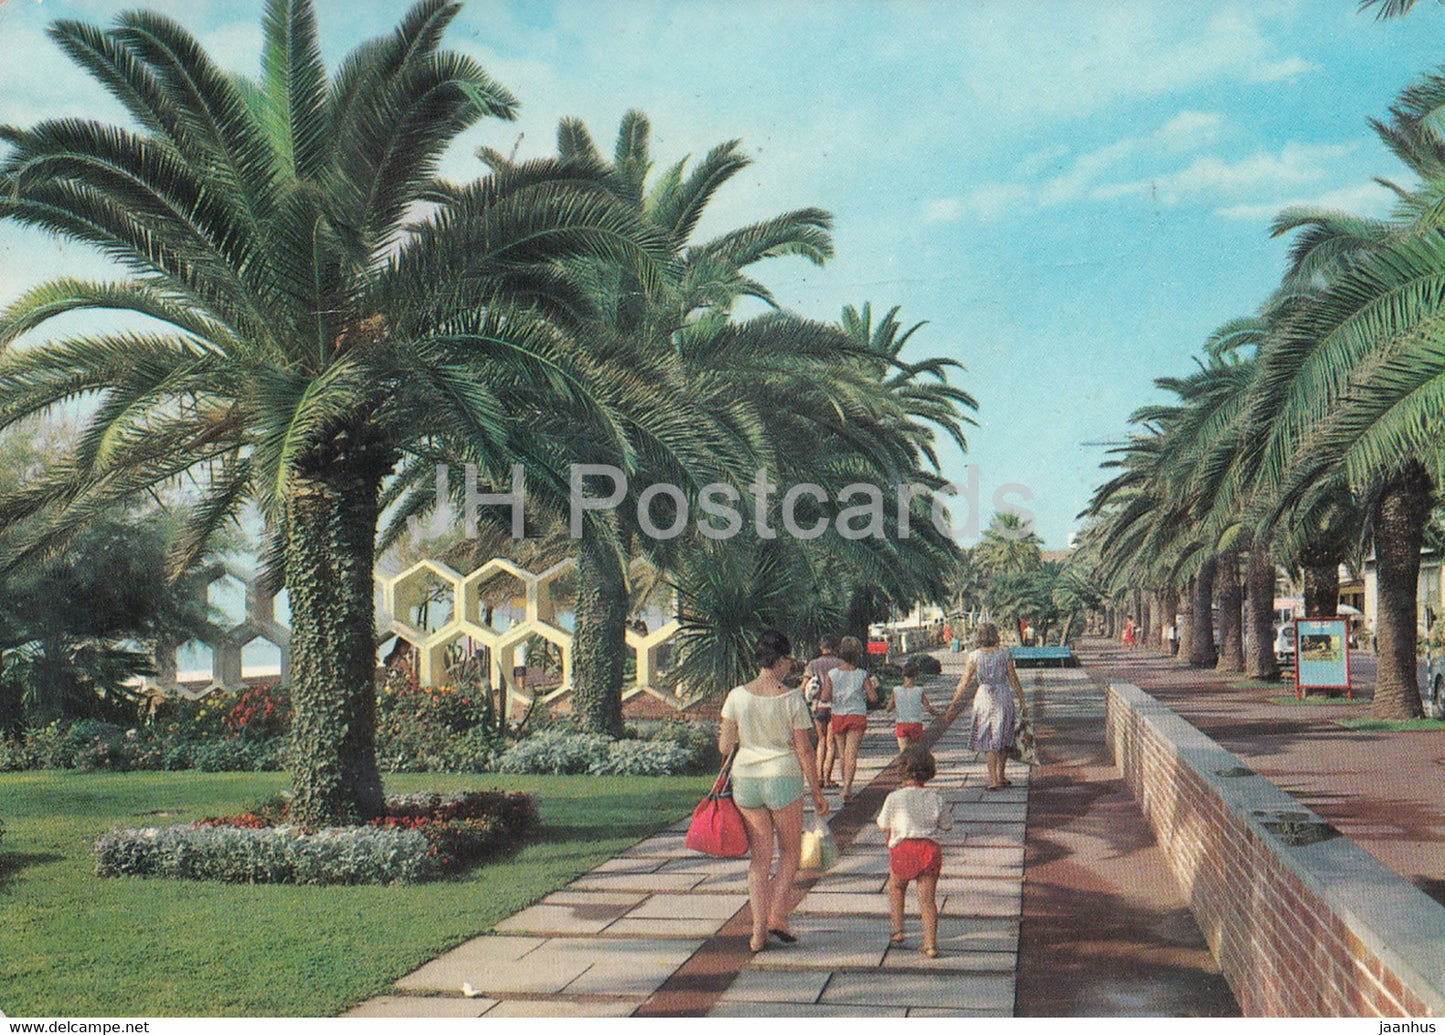 Rivera delle Palme - Pietraligure - Passeggiata - promenade - 1965 - Italy - Italia - used - JH Postcards